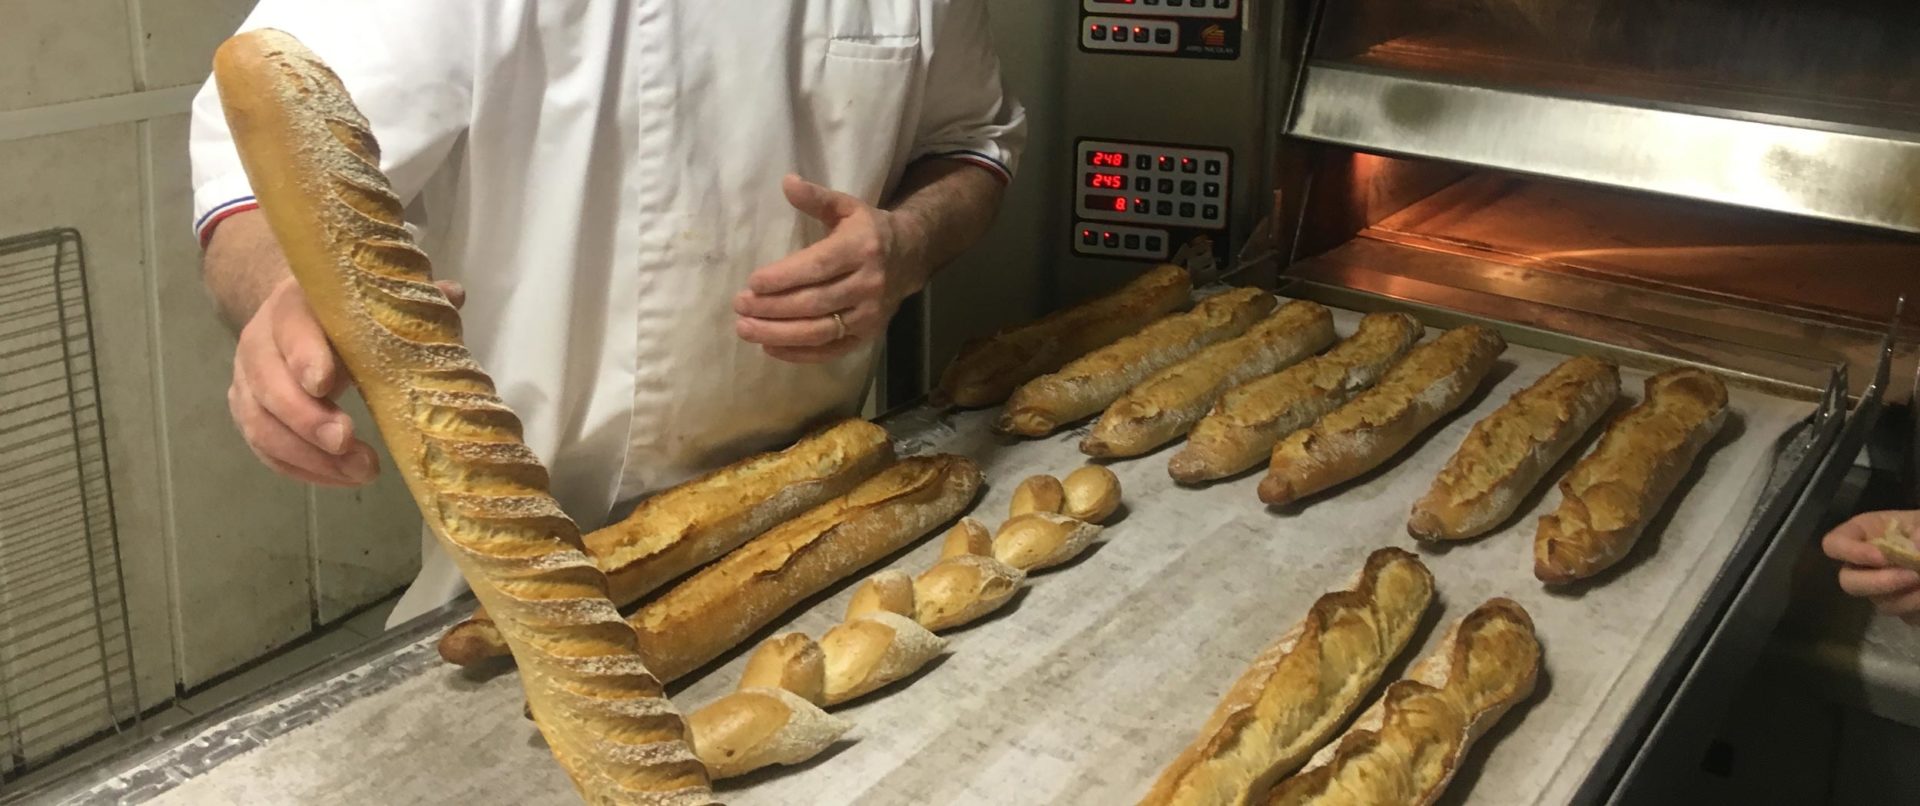 baguette-croissant-making-class-paris-france